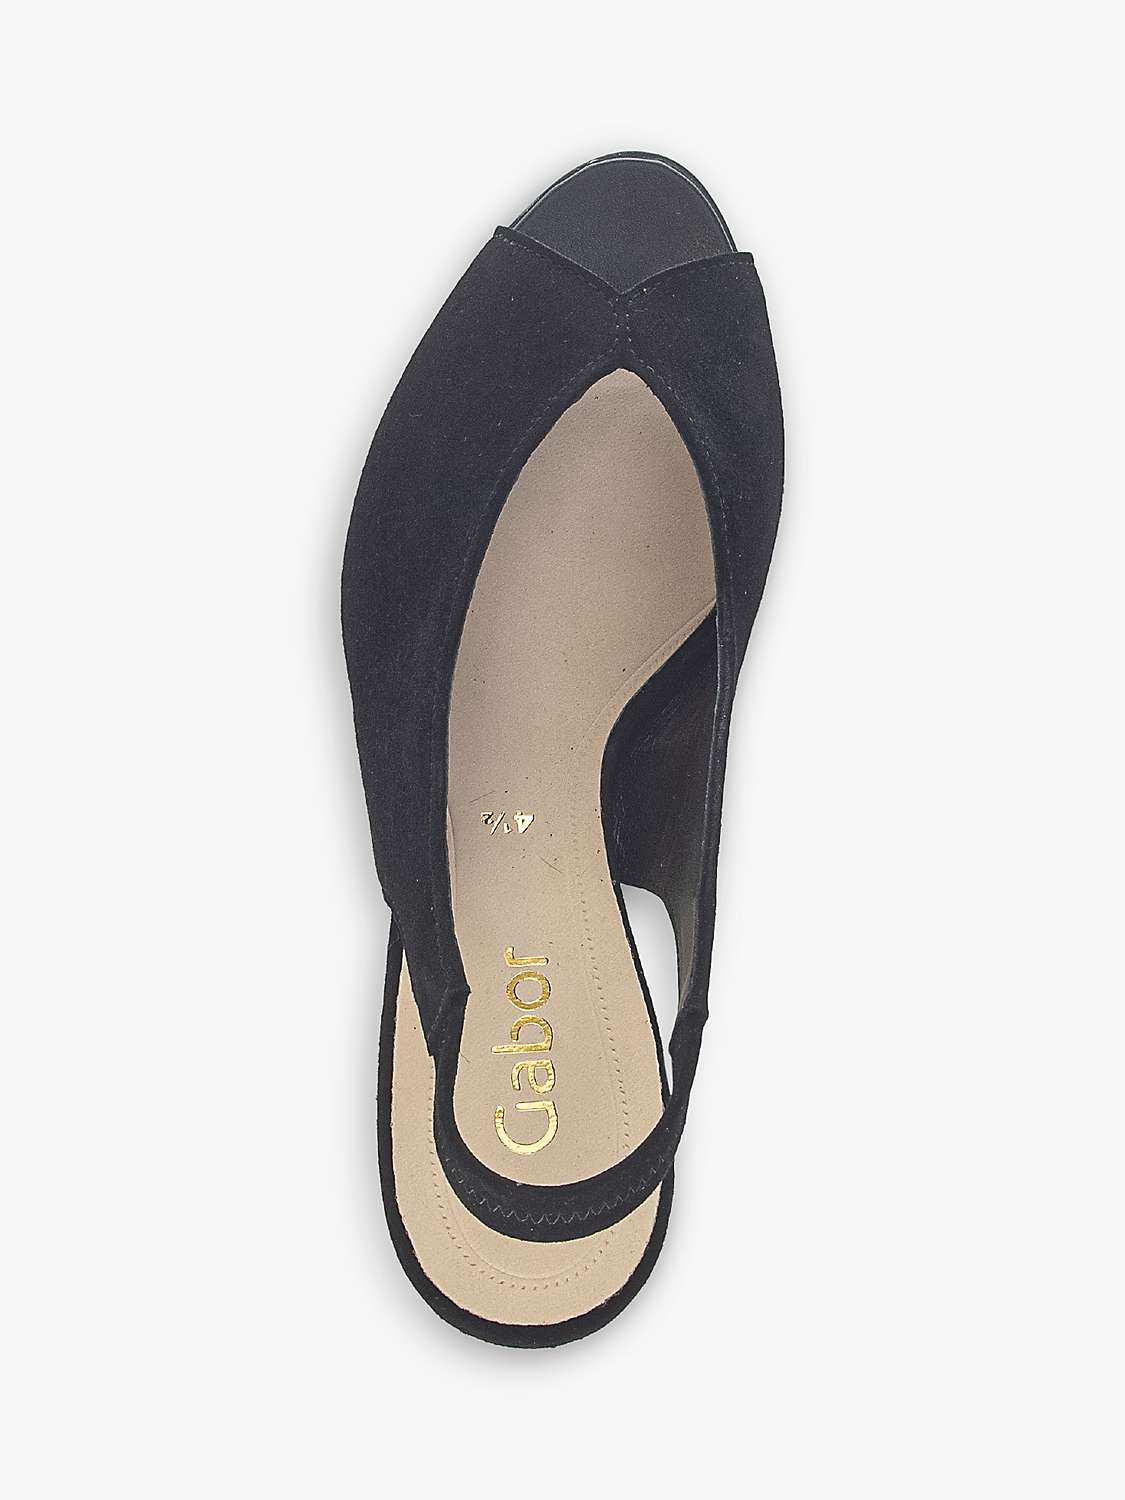 Buy Gabor Eternity Suede Peep Toe Slingback Shoes, Black Online at johnlewis.com